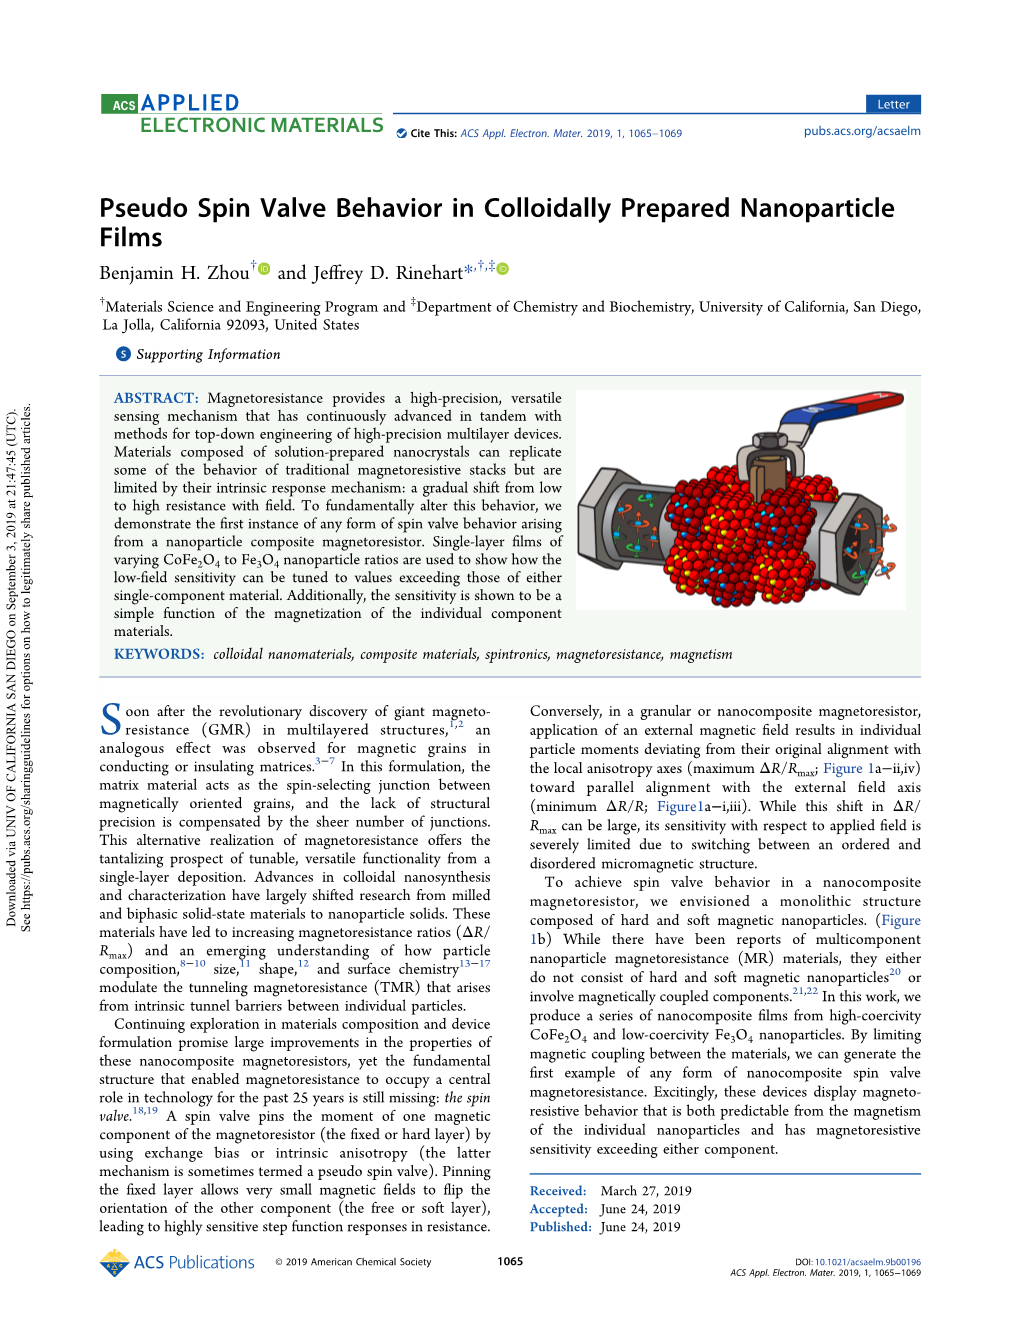 Pseudo Spin Valve Behavior in Colloidally Prepared Nanoparticle Films Benjamin H